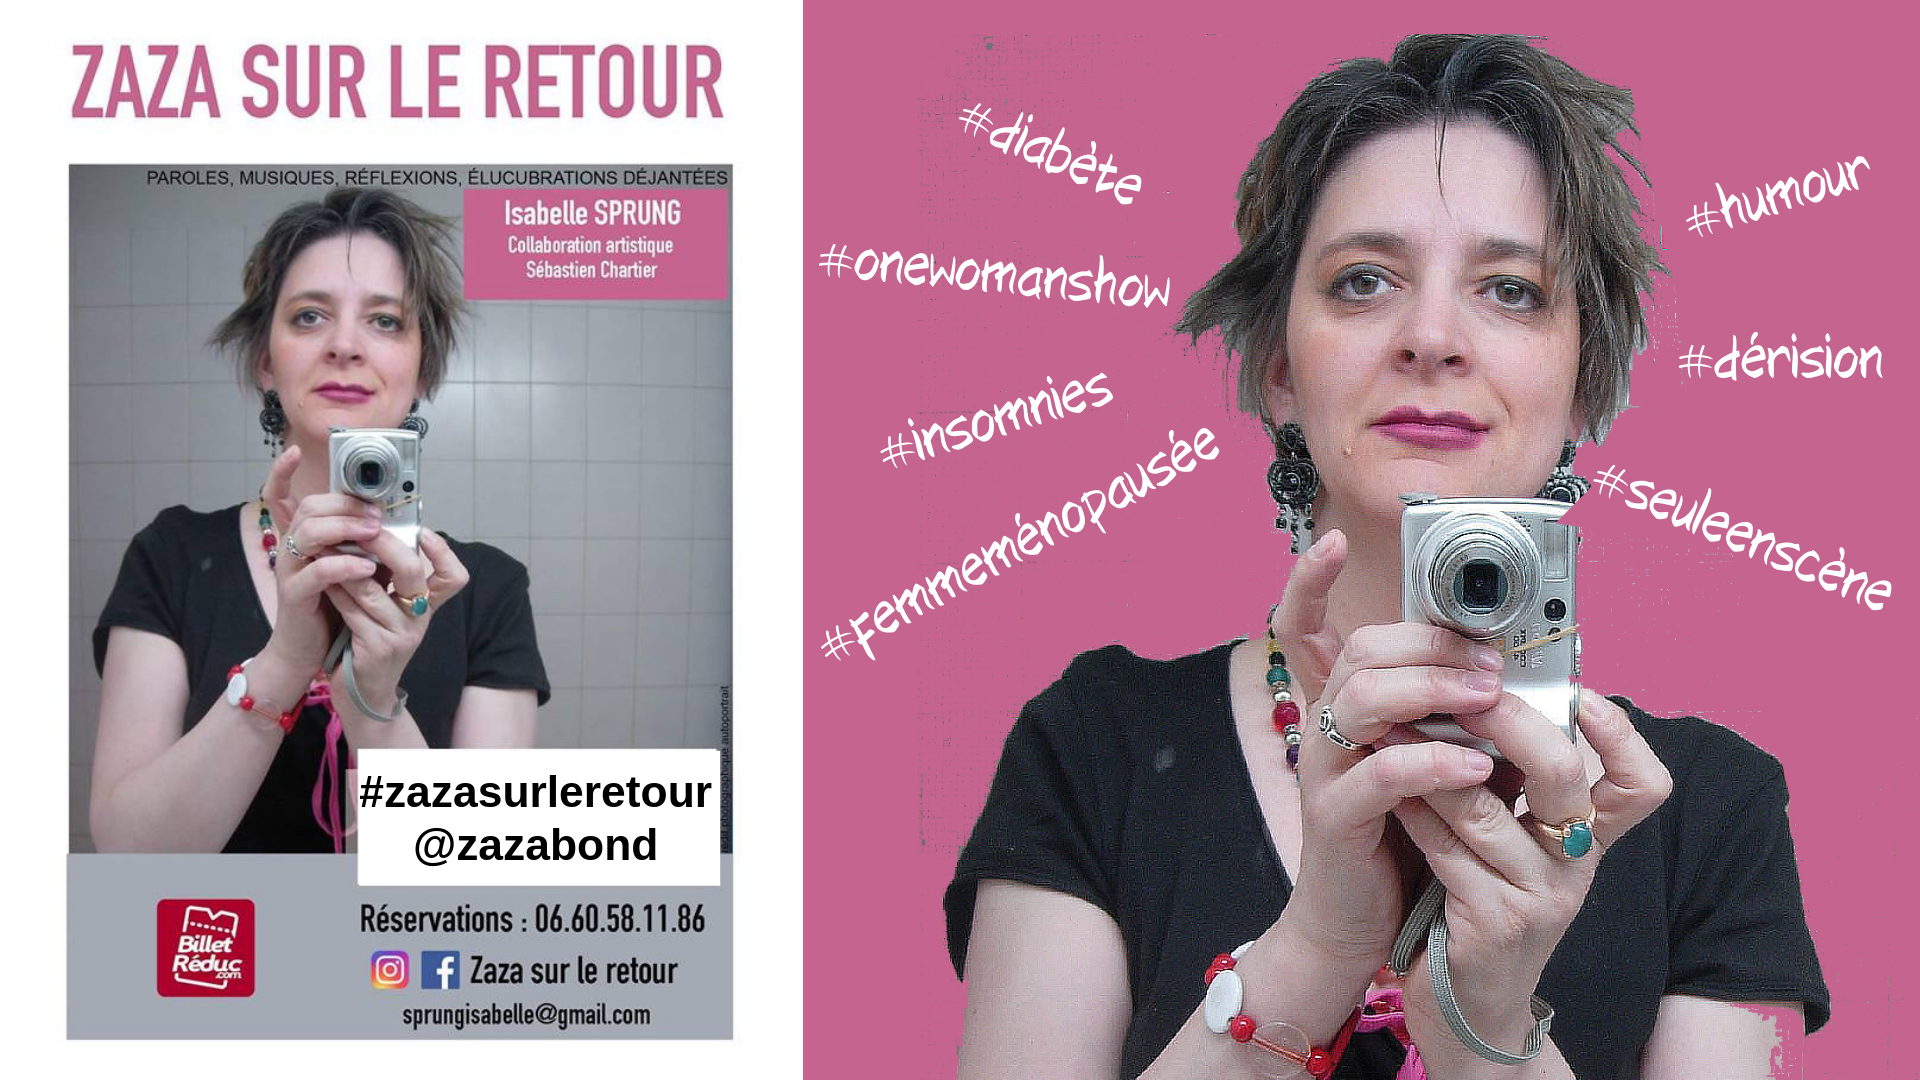 les-hashtags-zaza-sur-le-retour-isabelle-sprung-presentation